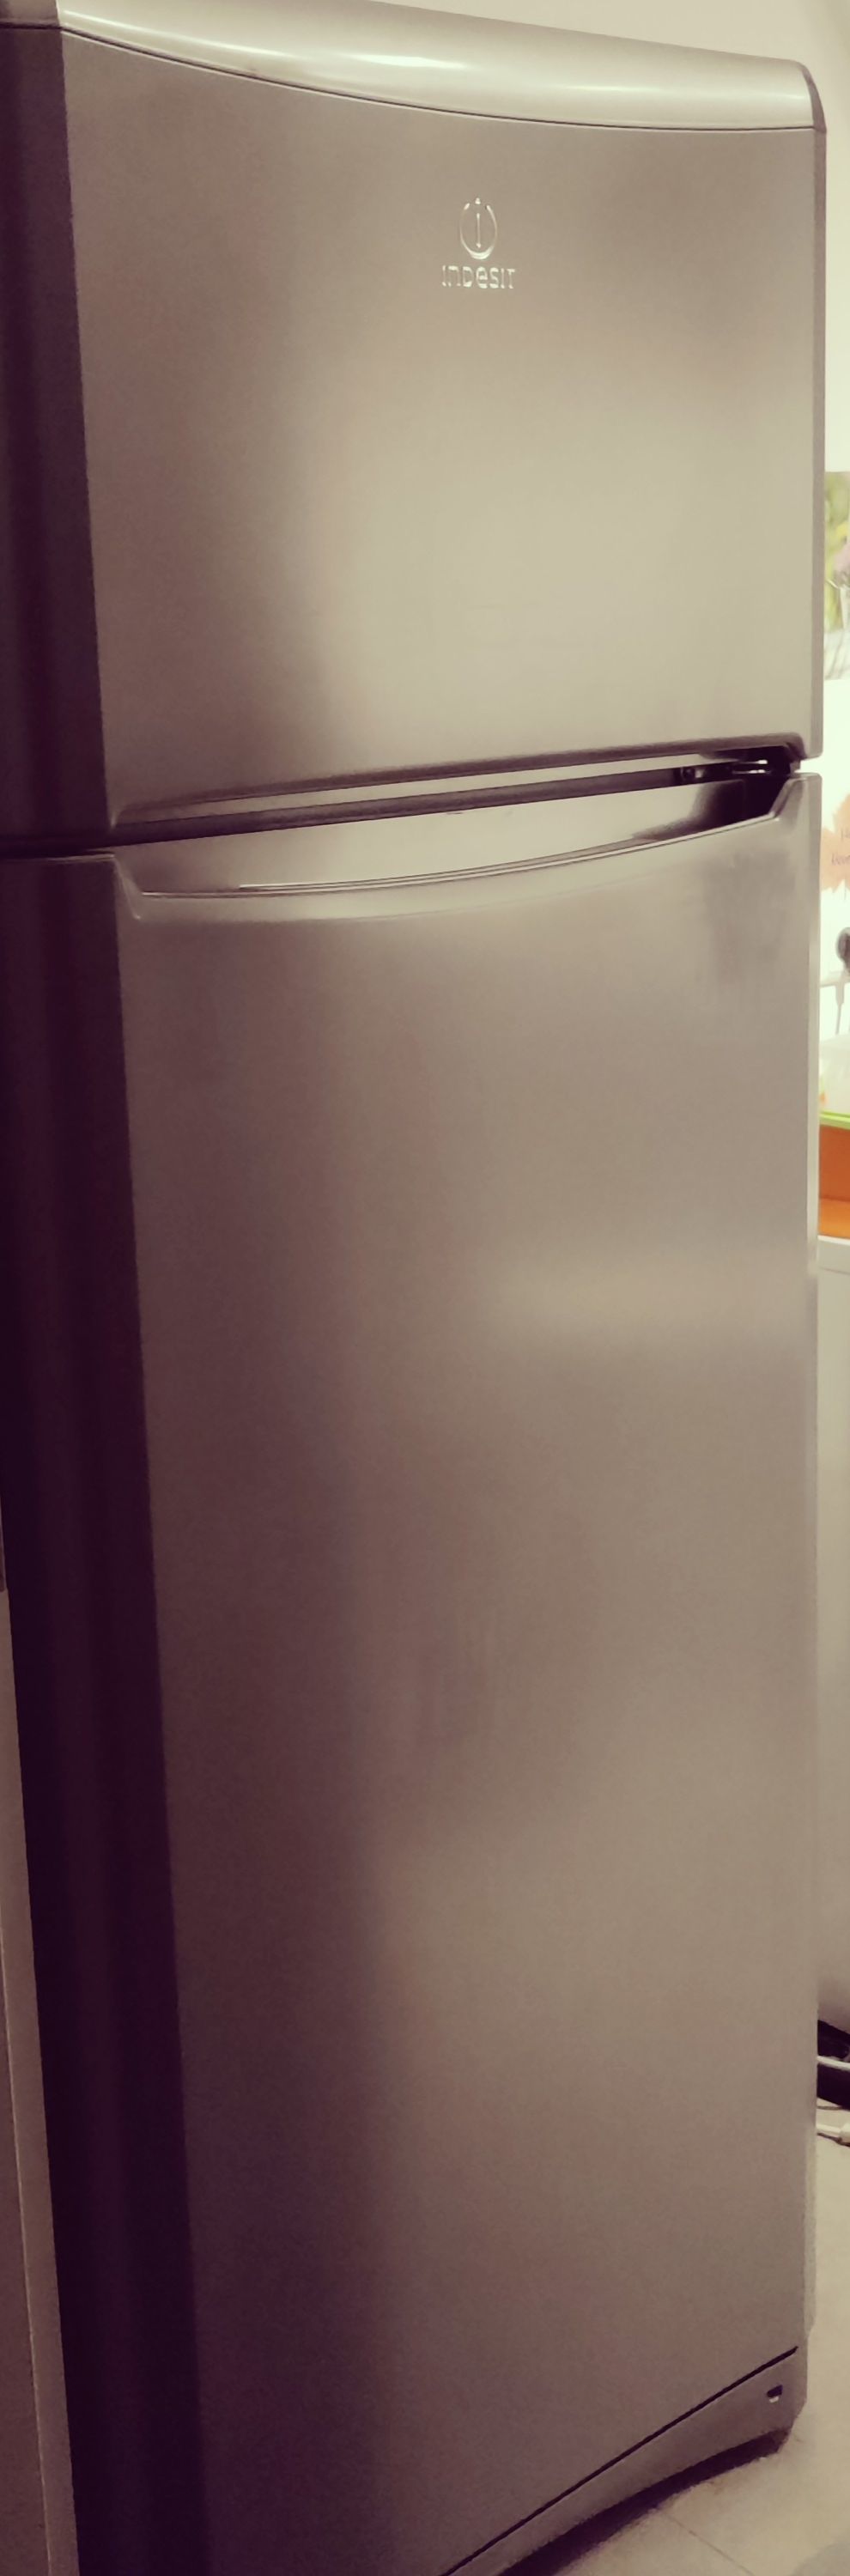 Kühlschrank der Marke Indesit